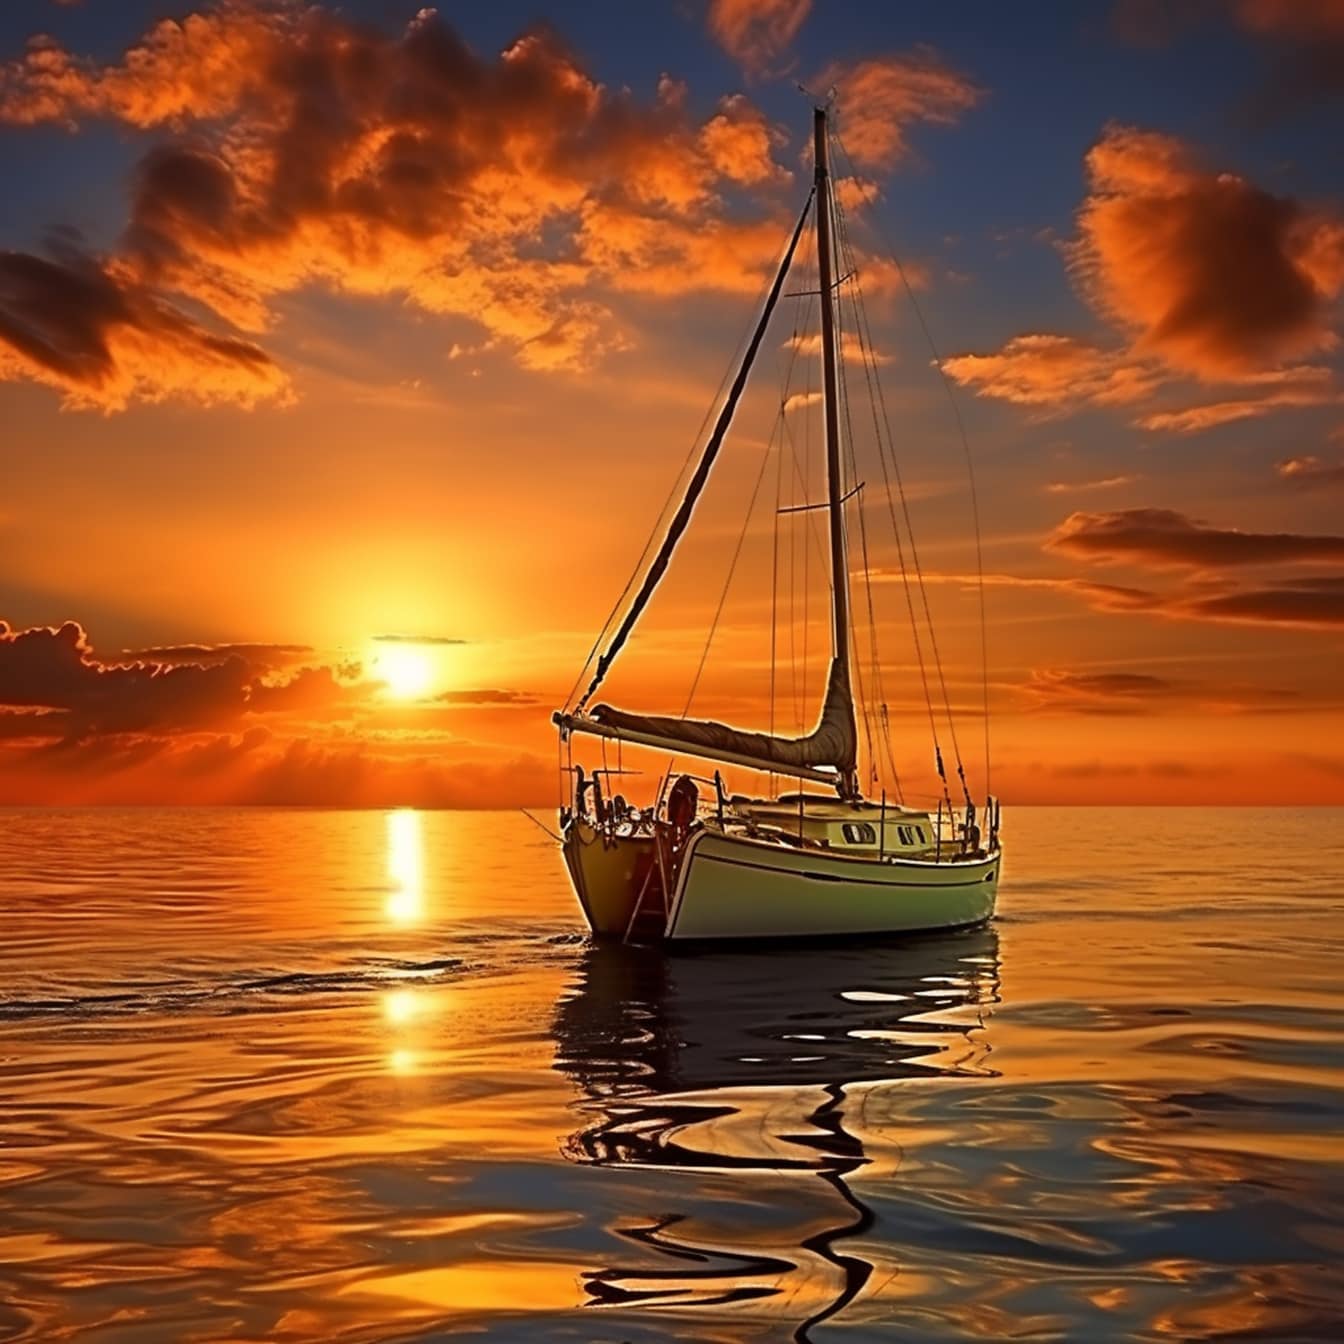 Illustration eines Segelboots auf dem Meer bei Sonnenuntergang